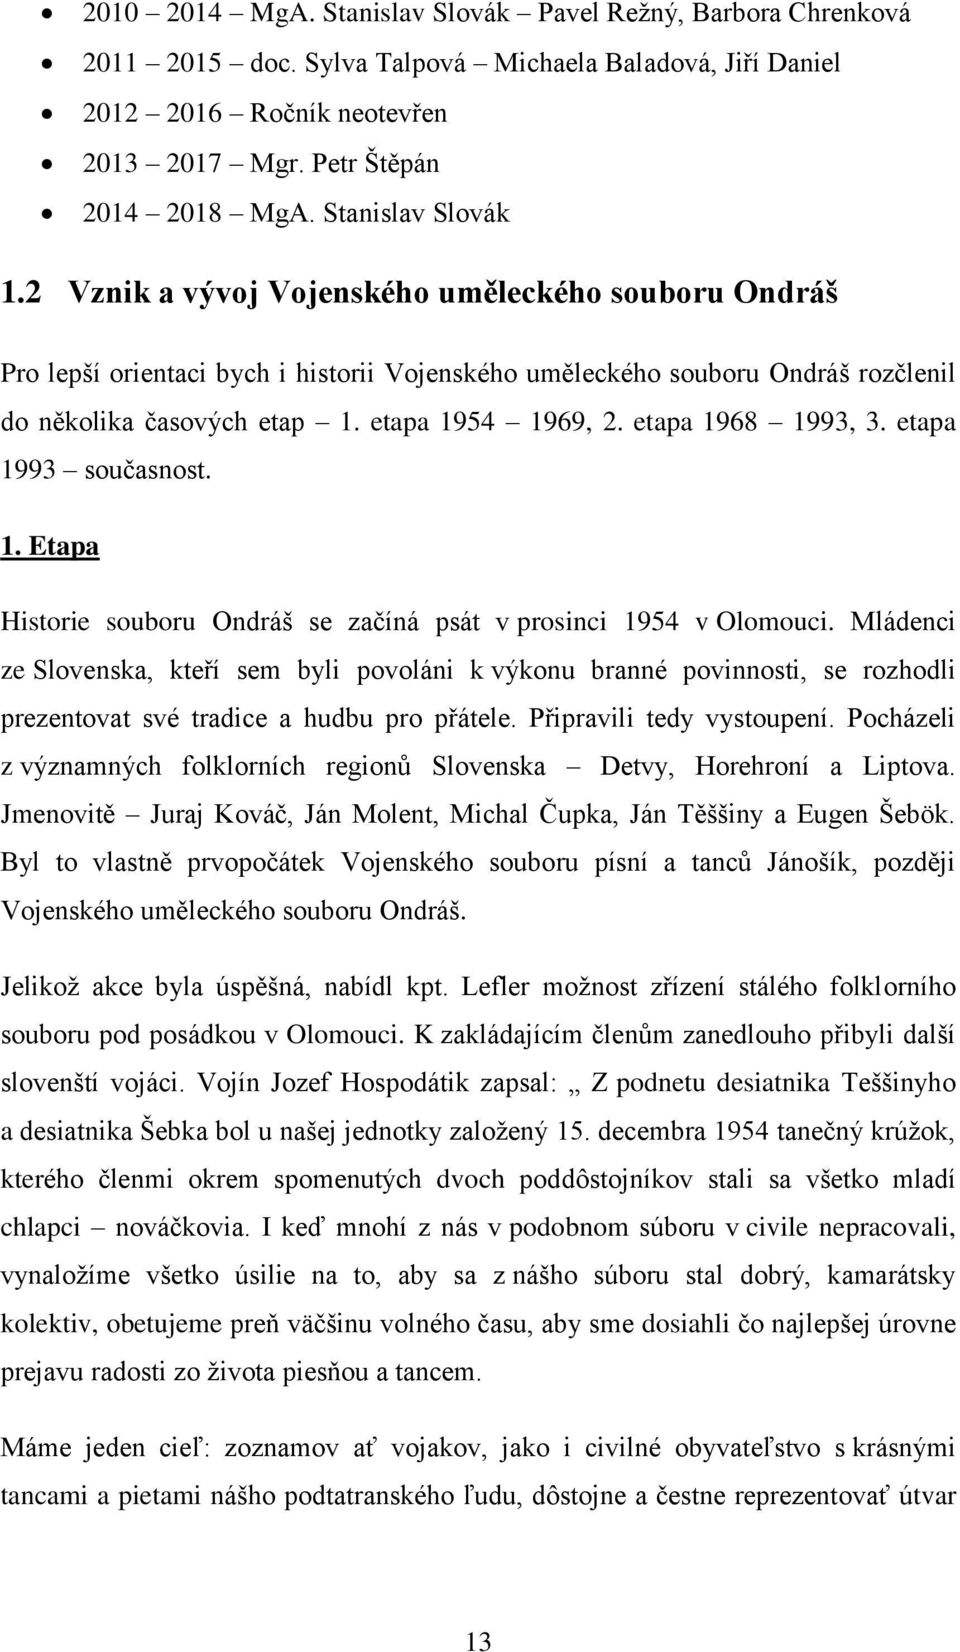 etapa 1954 1969, 2. etapa 1968 1993, 3. etapa 1993 současnost. 1. Etapa Historie souboru Ondráš se začíná psát v prosinci 1954 v Olomouci.